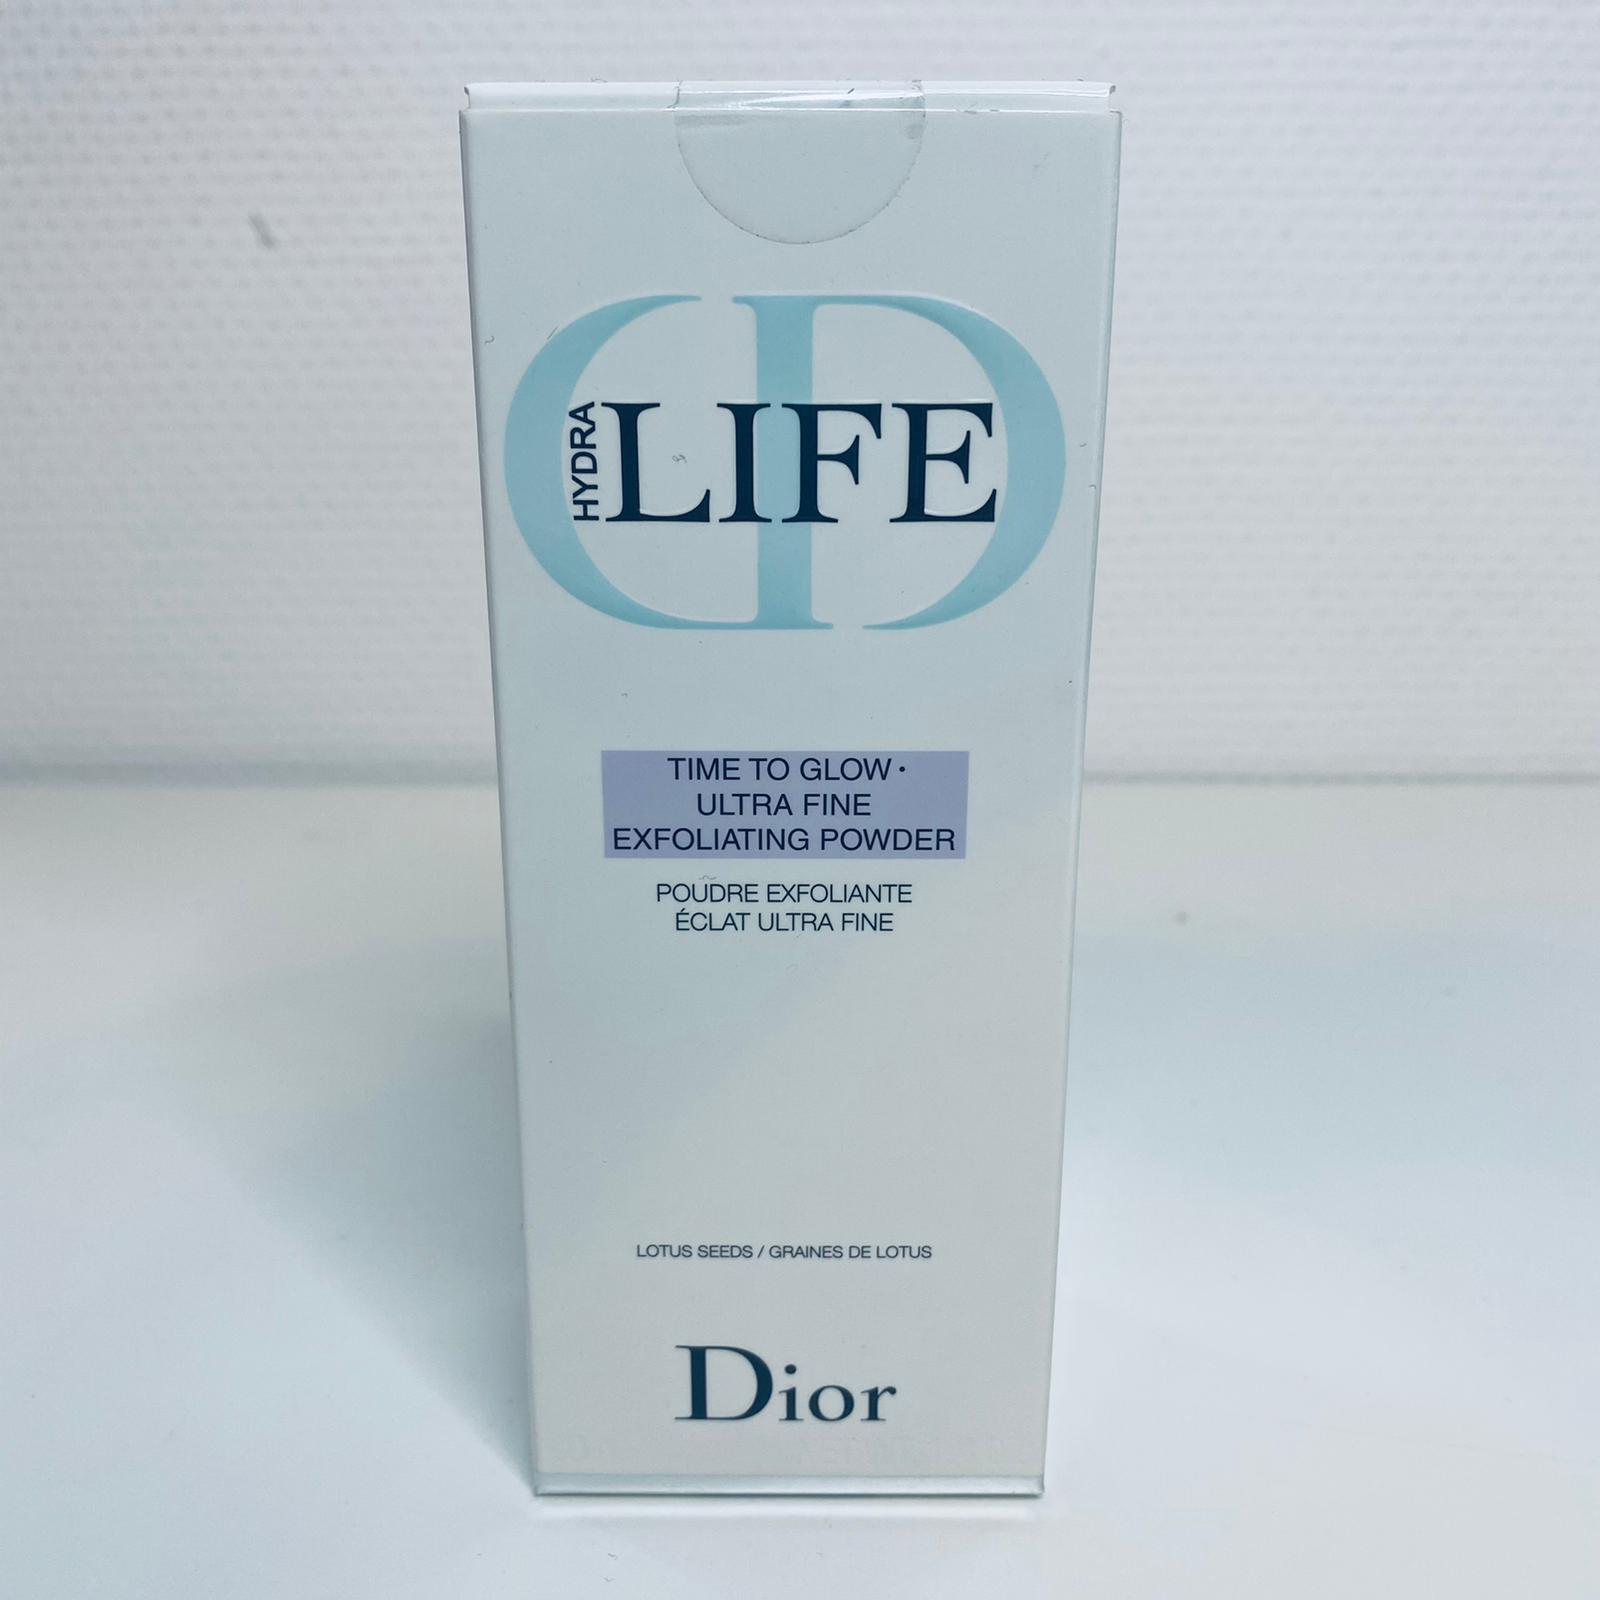 Dior hydra life time to glow exfoliating powder 40 g